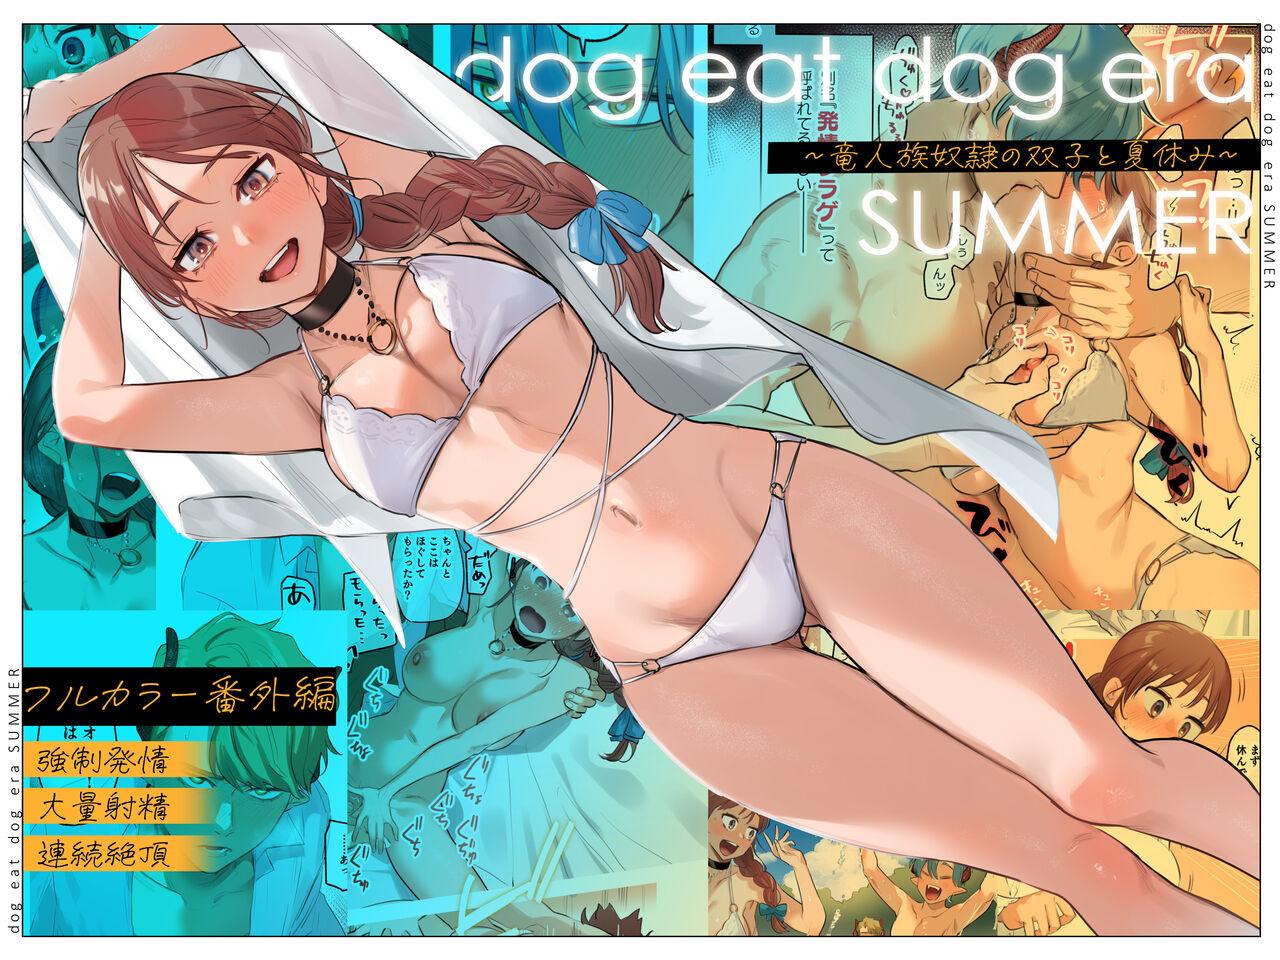 dog eat dog era SUMMER∼竜人族奴隷の双子と夏休み∼ [Mauve (鬼遍かっつぇ)]  0